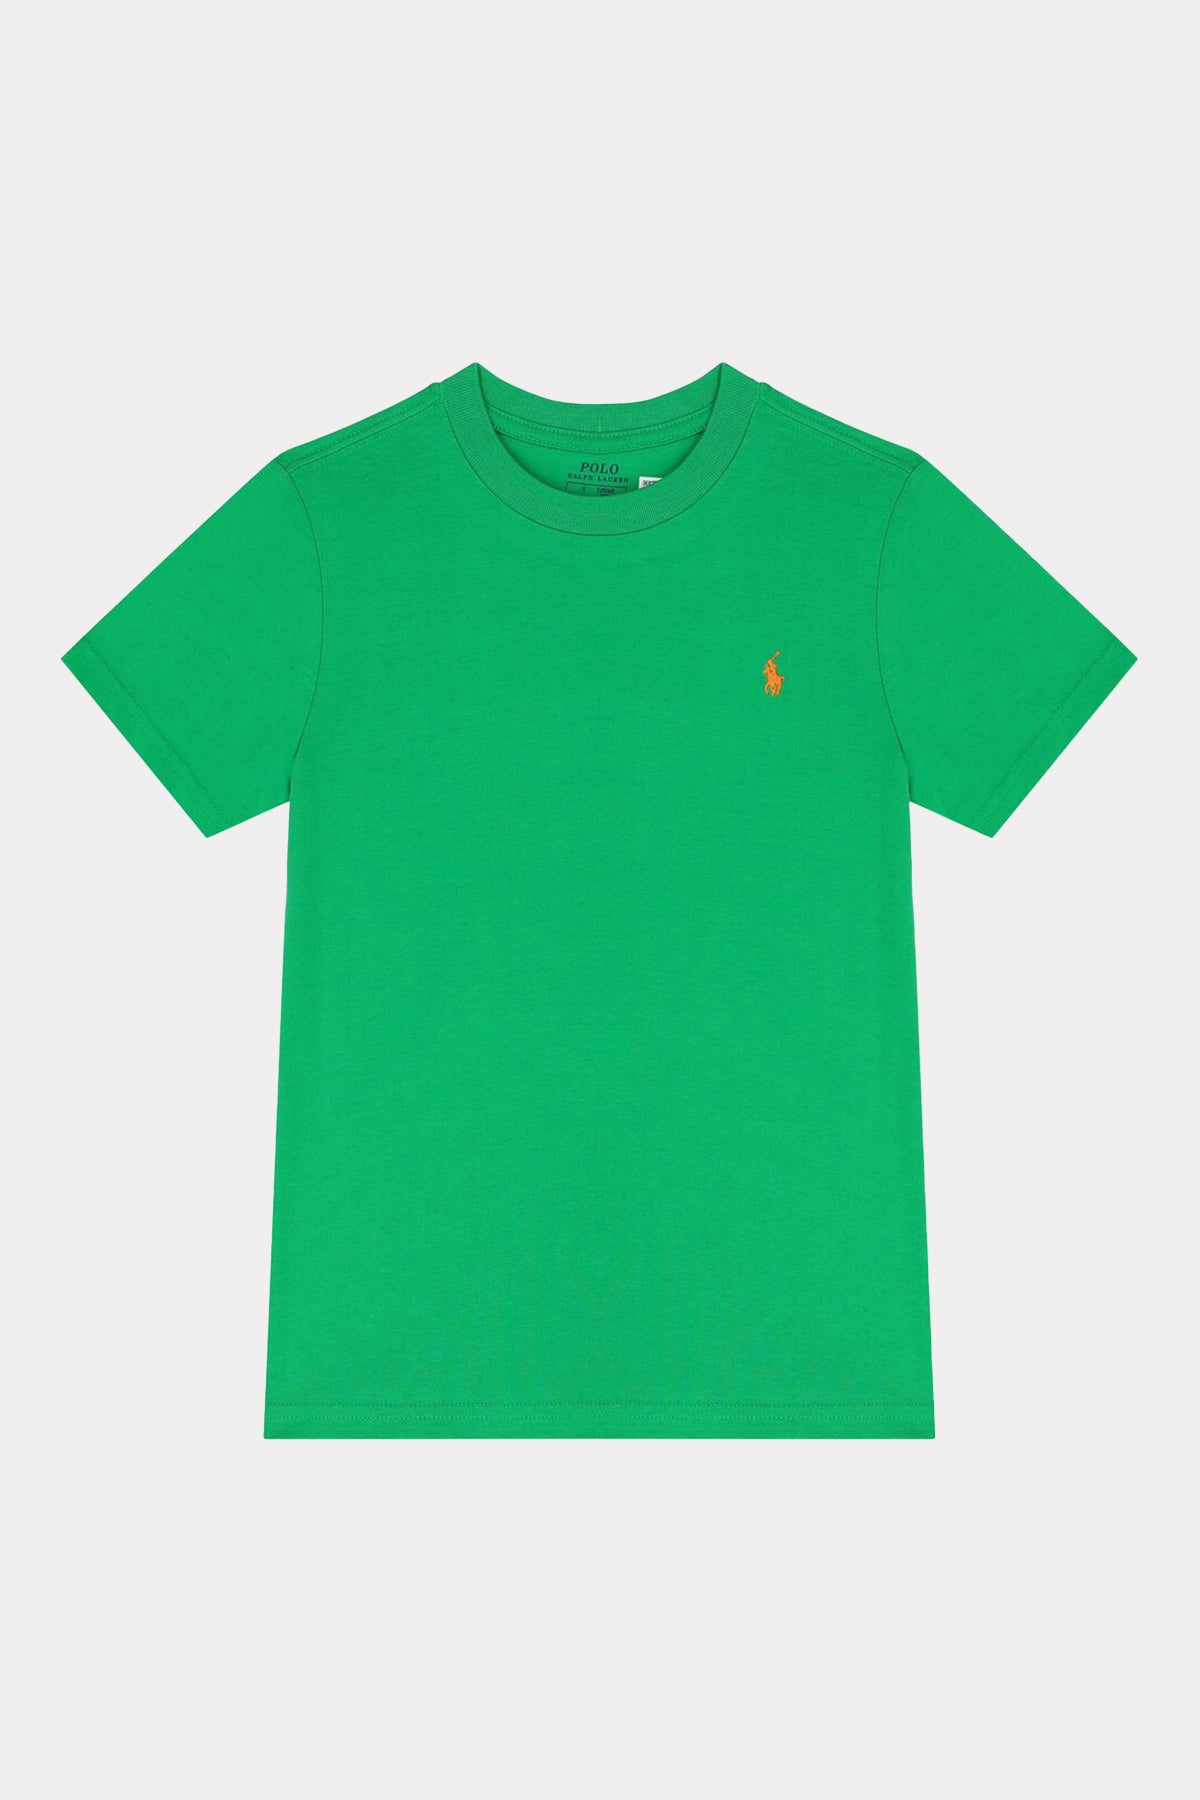 Polo Ralph Lauren Kids 2-7 Yaş Unisex Çocuk Yuvarlak Yaka T-shirt